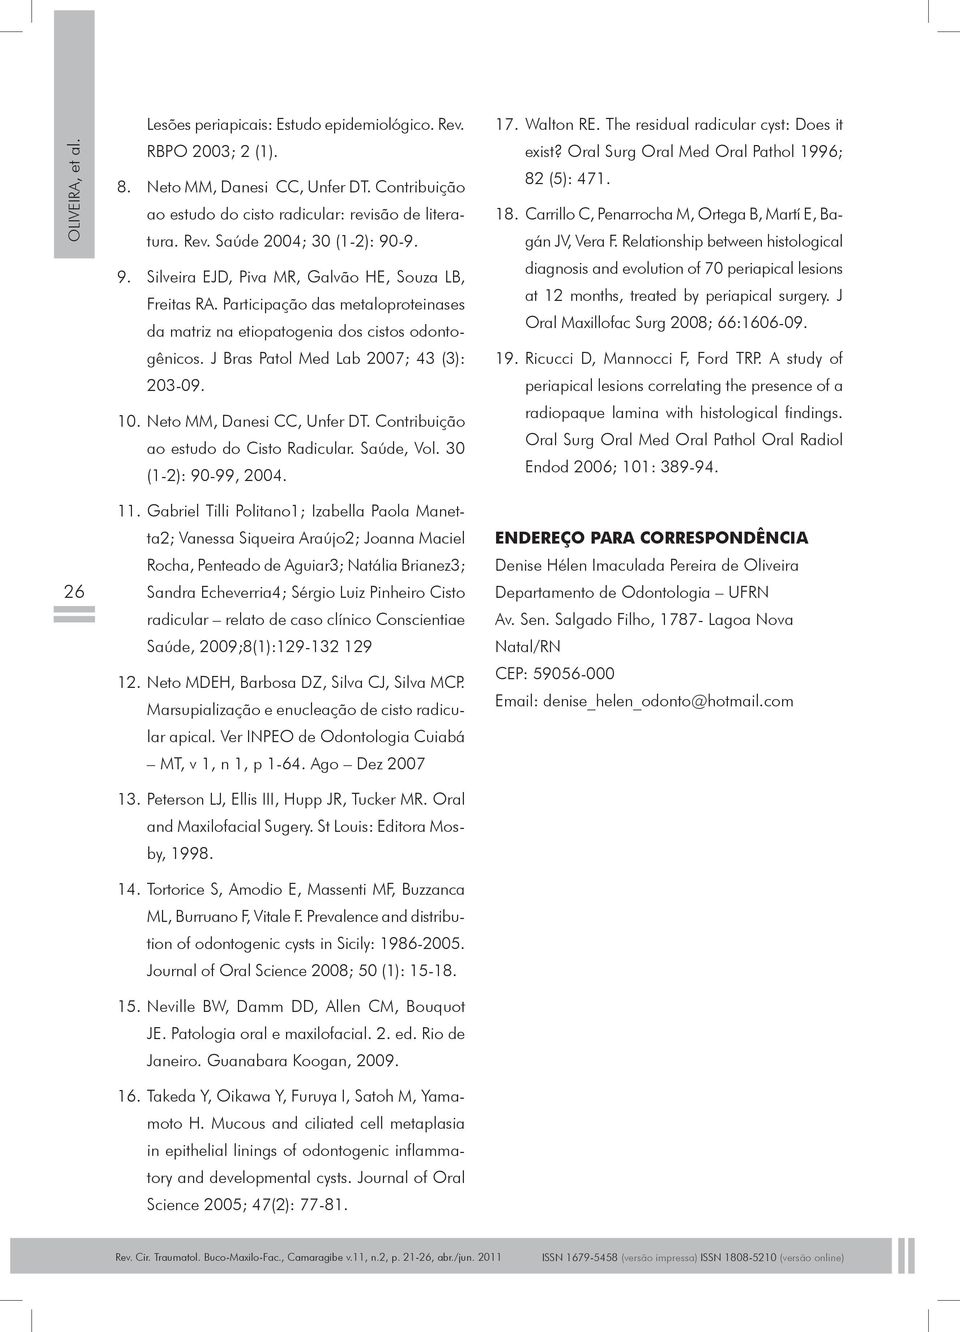 Neto MM, Danesi CC, Unfer DT. Contribuição ao estudo do Cisto Radicular. Saúde, Vol. 30 (1-2): 90-99, 2004. 17. Walton RE. The residual radicular cyst: Does it exist?